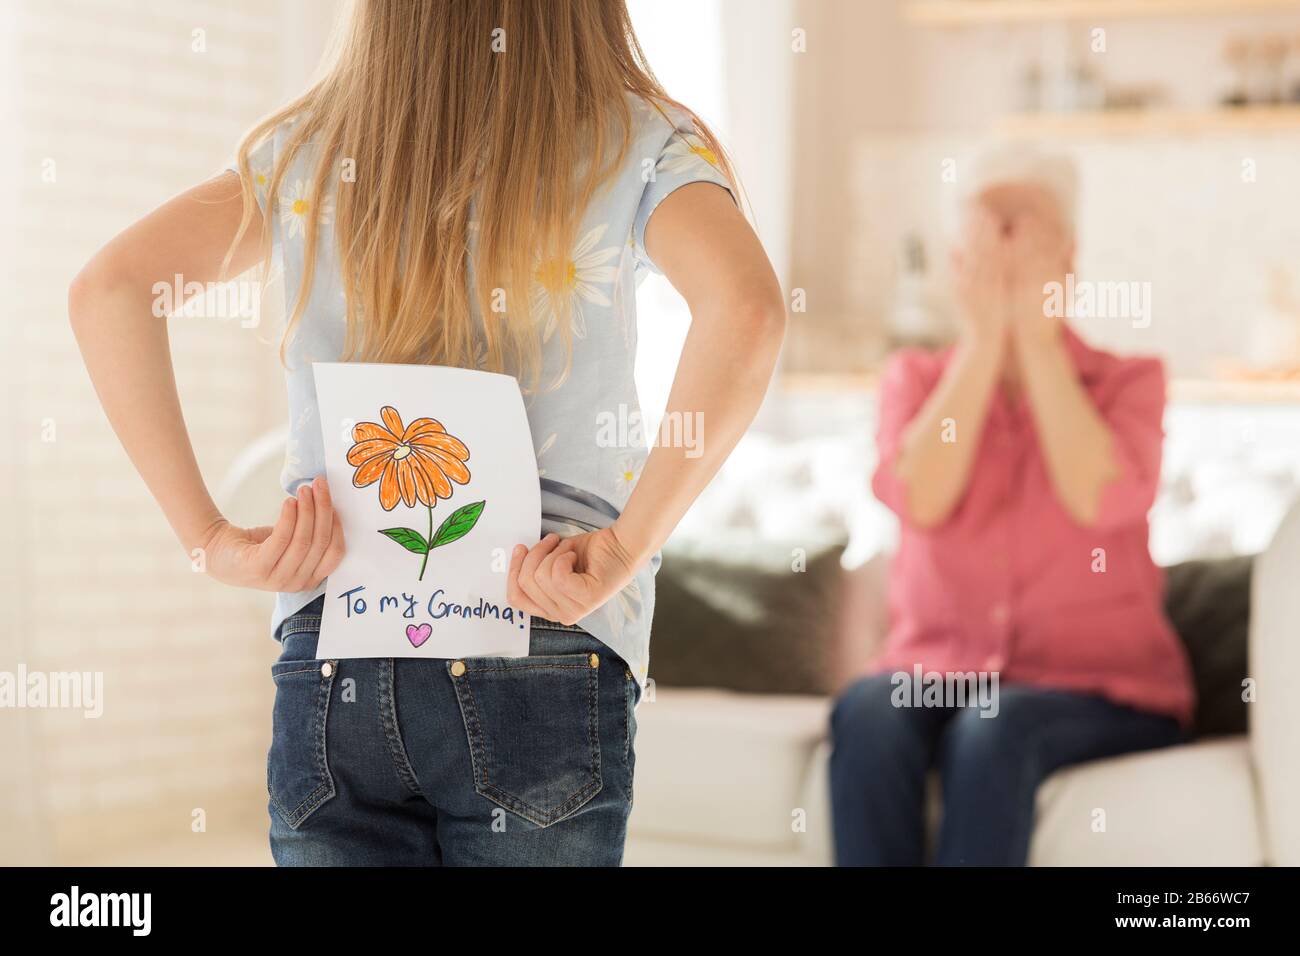 Bambina con biglietto di auguri per la nonna dietro la schiena, closeup. Spazio vuoto Foto Stock